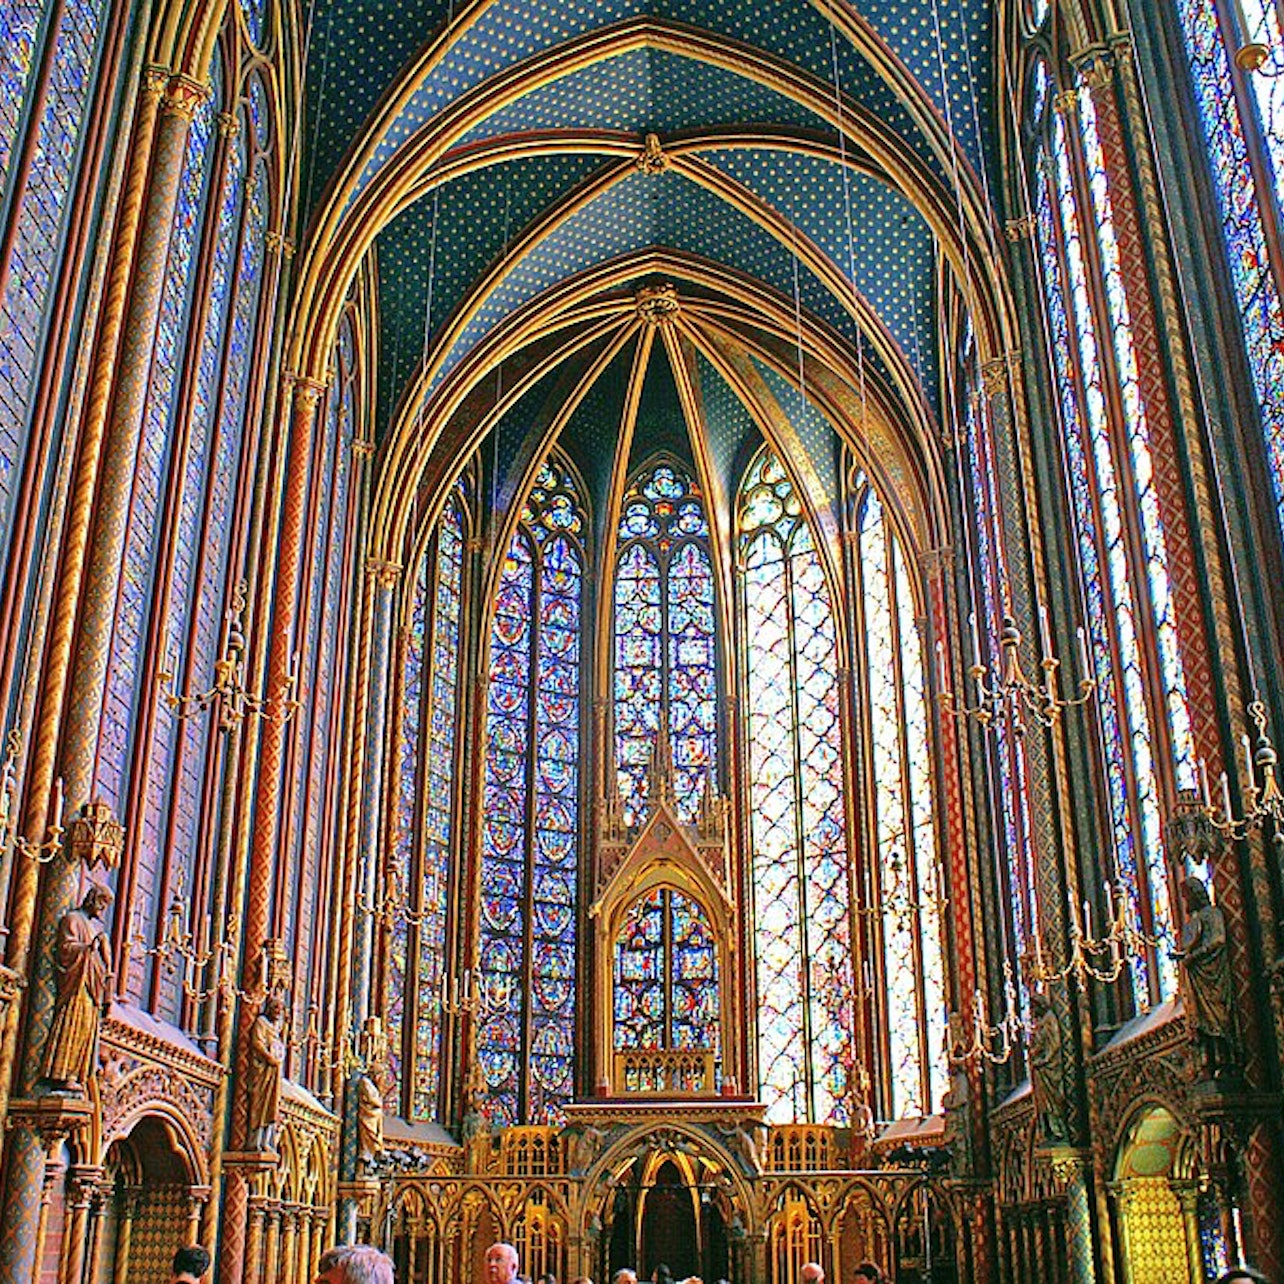 Picture of Sainte Chapelle in Paris, France